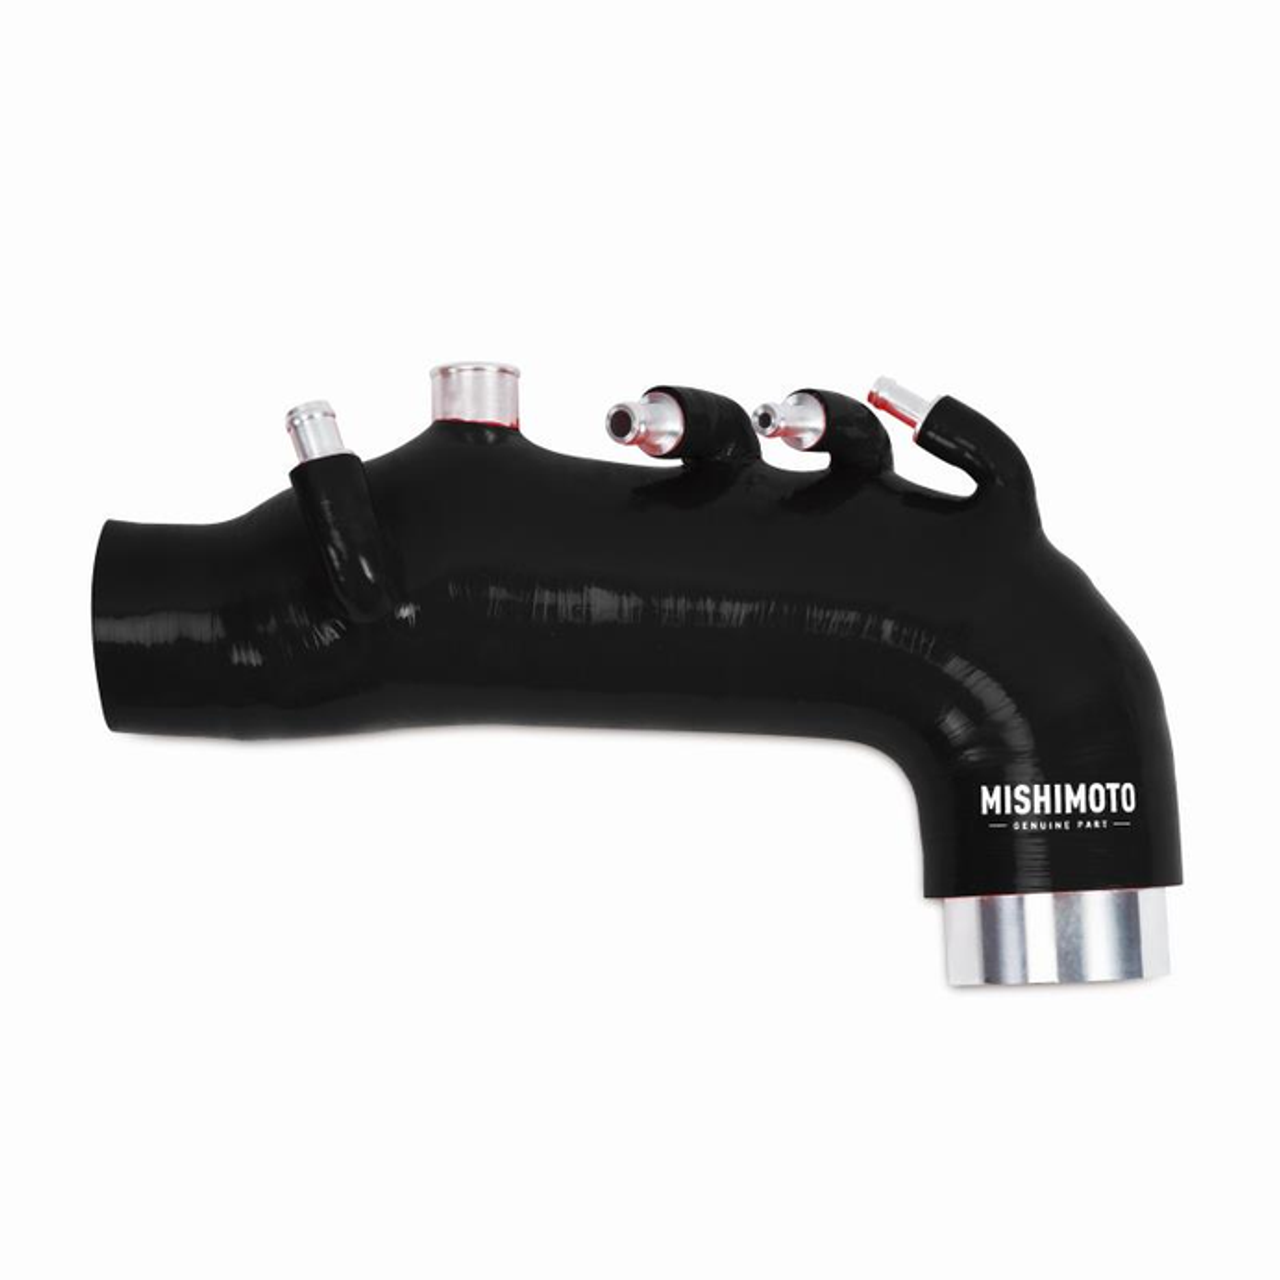 Mishimoto Silicone Induction Hose Kit | Multiple Subaru Fitments